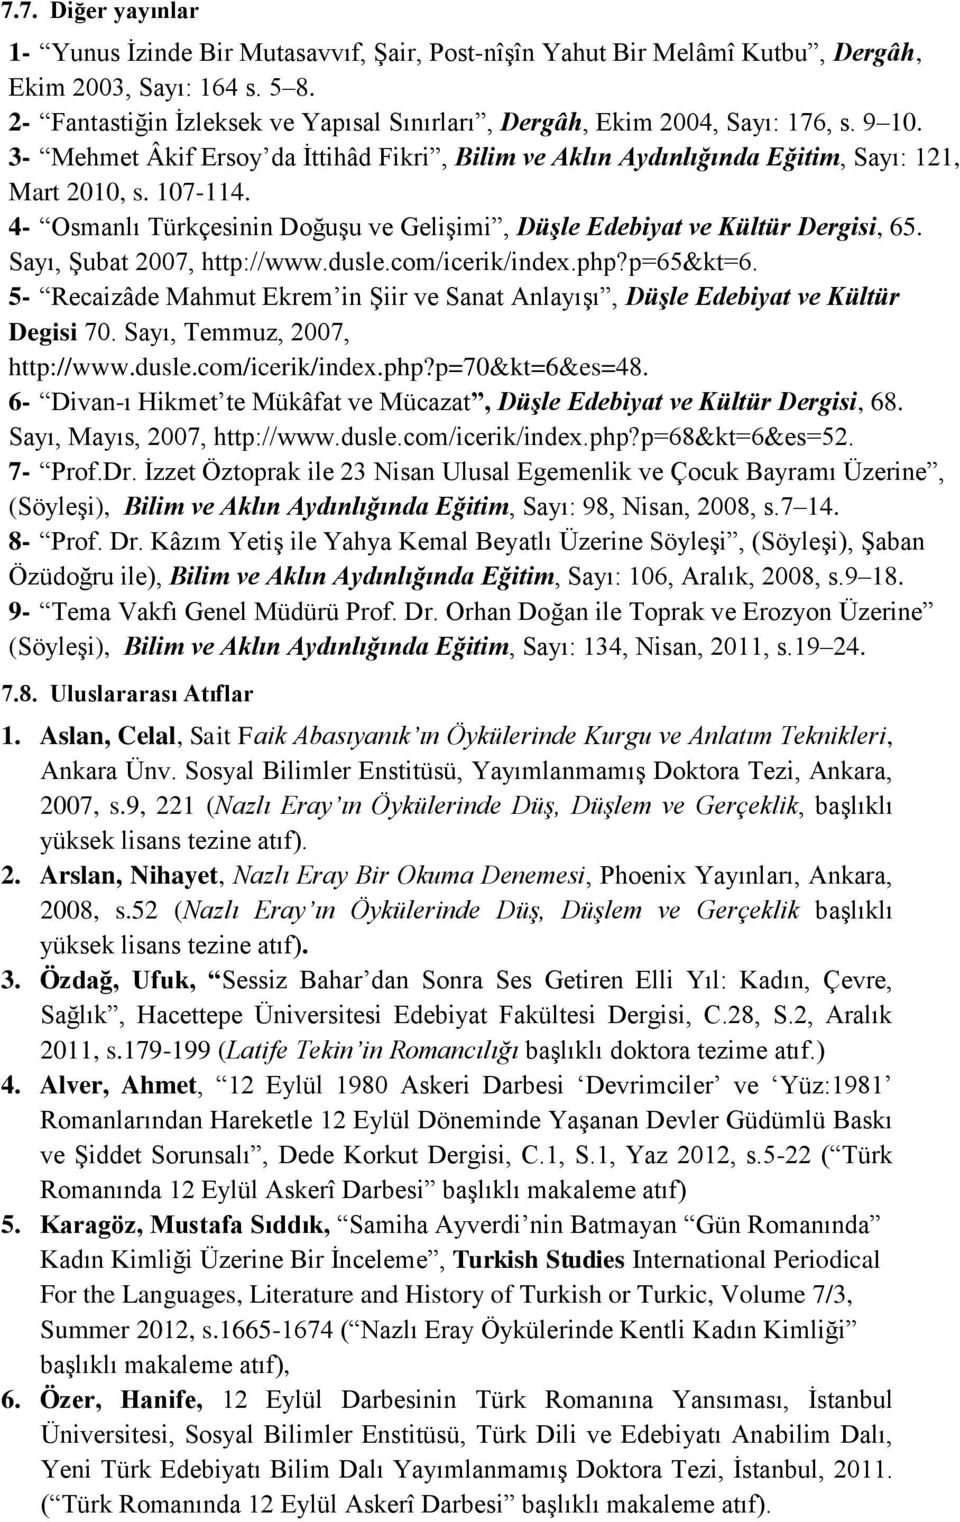 4- Osmanlı Türkçesinin Doğuşu ve Gelişimi, Düşle Edebiyat ve Kültür Dergisi, 65. Sayı, Şubat 2007, http://www.dusle.com/icerik/index.php?p=65&kt=6.